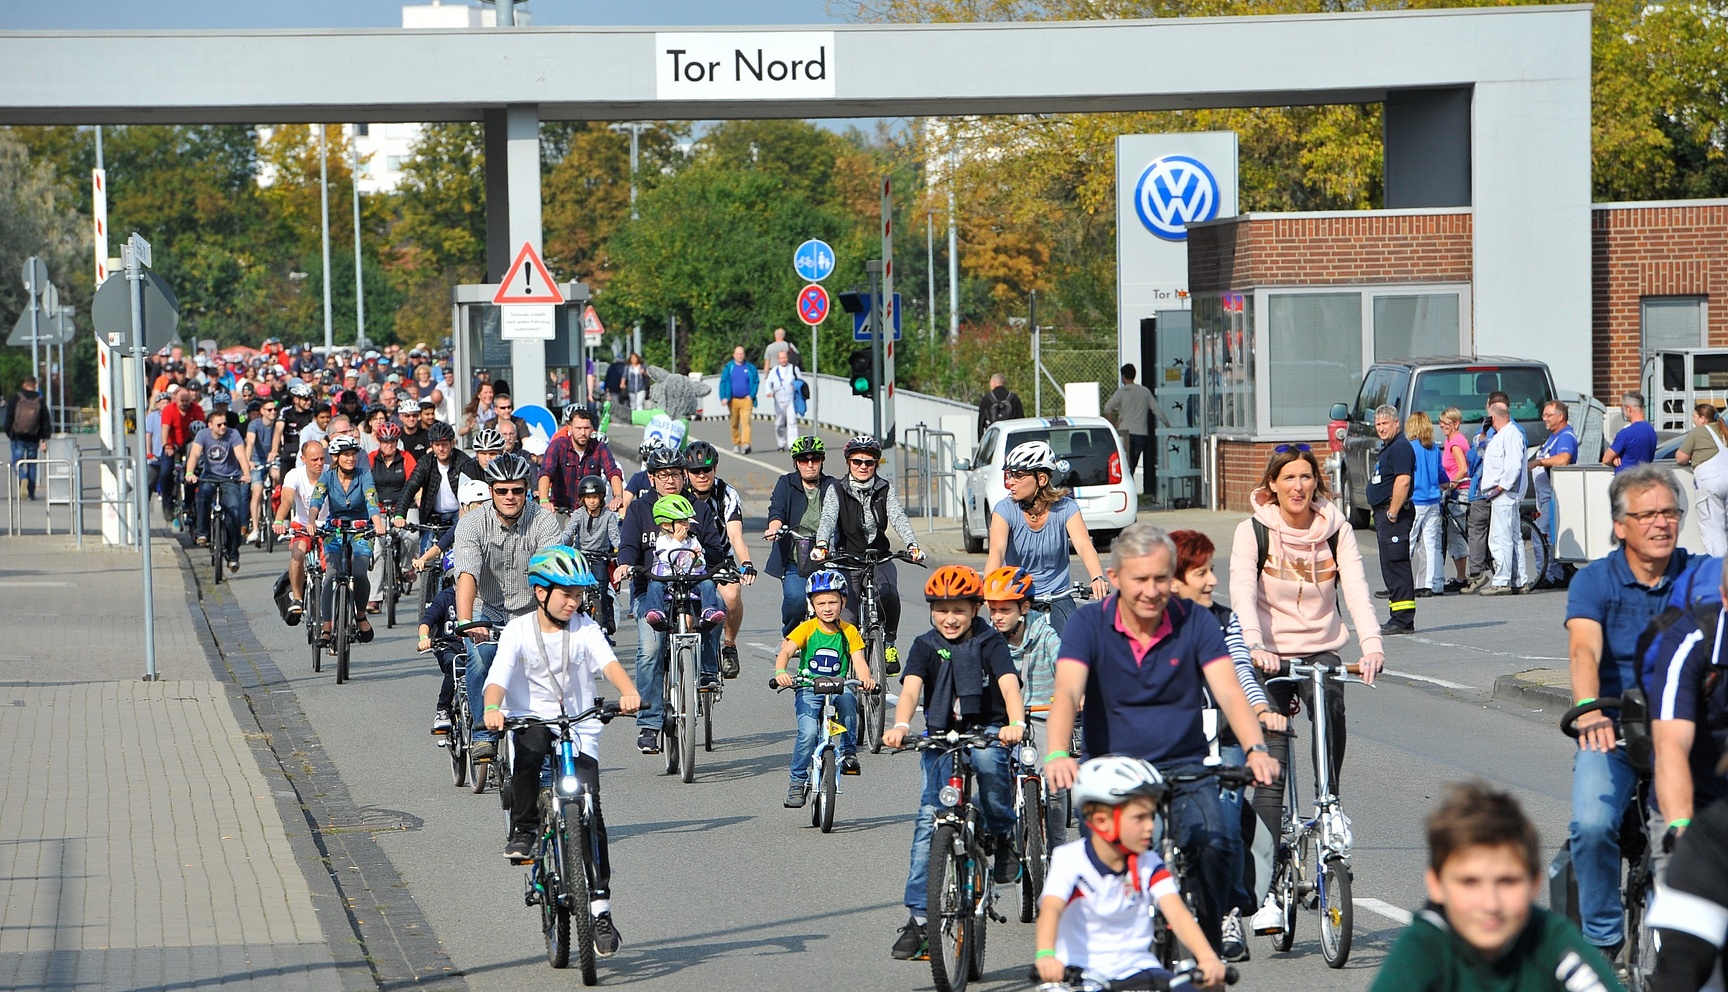 Charity Bike Tour in Wolfsburg Das Familienfest mit dem Motto: "Gemeinsam radeln, gemeinsam helfen!"